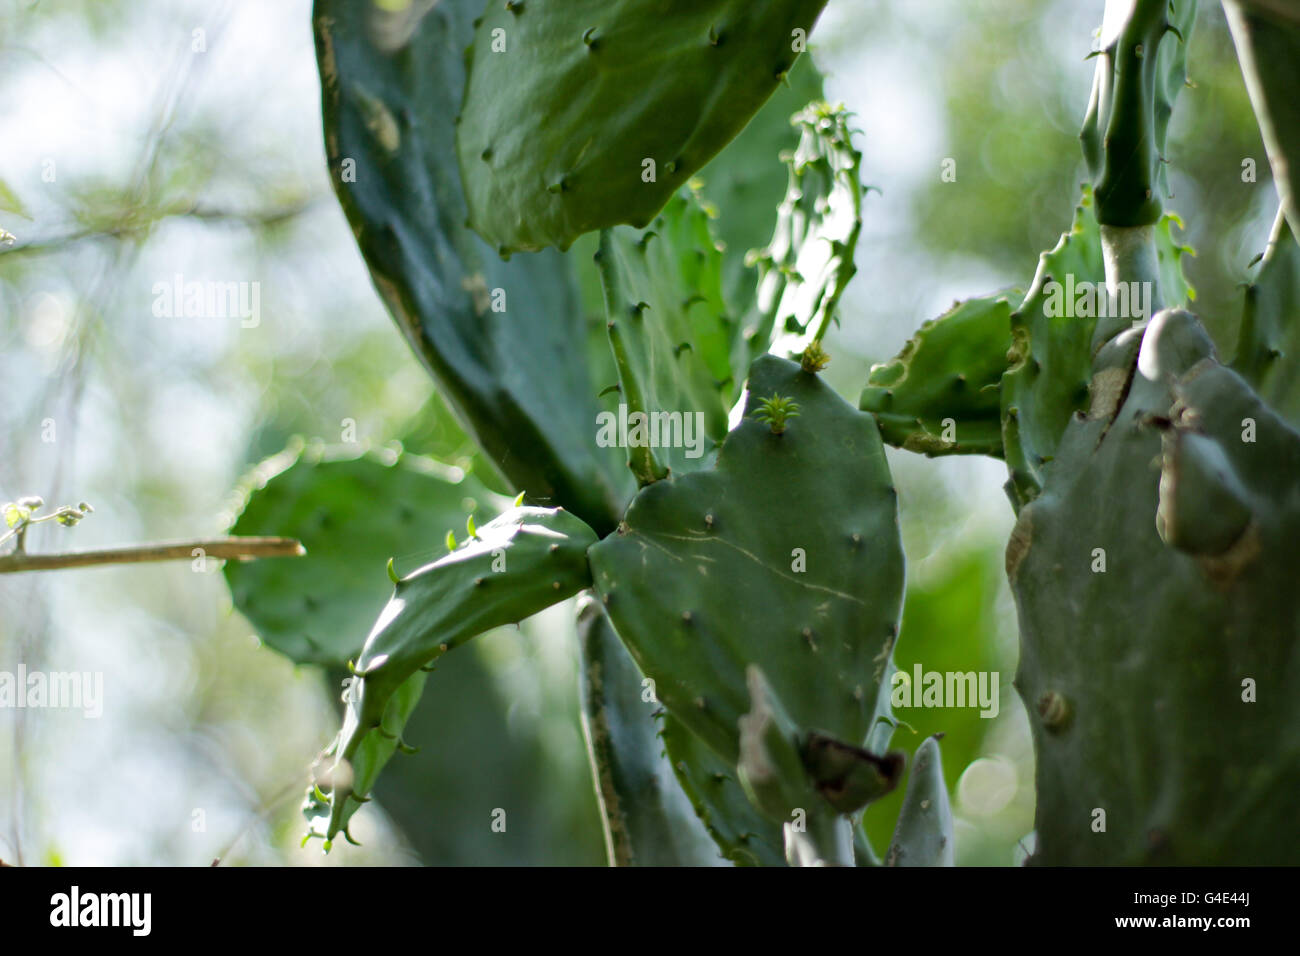 Fotografia di un verde cactus impianto denominato nopal Foto Stock